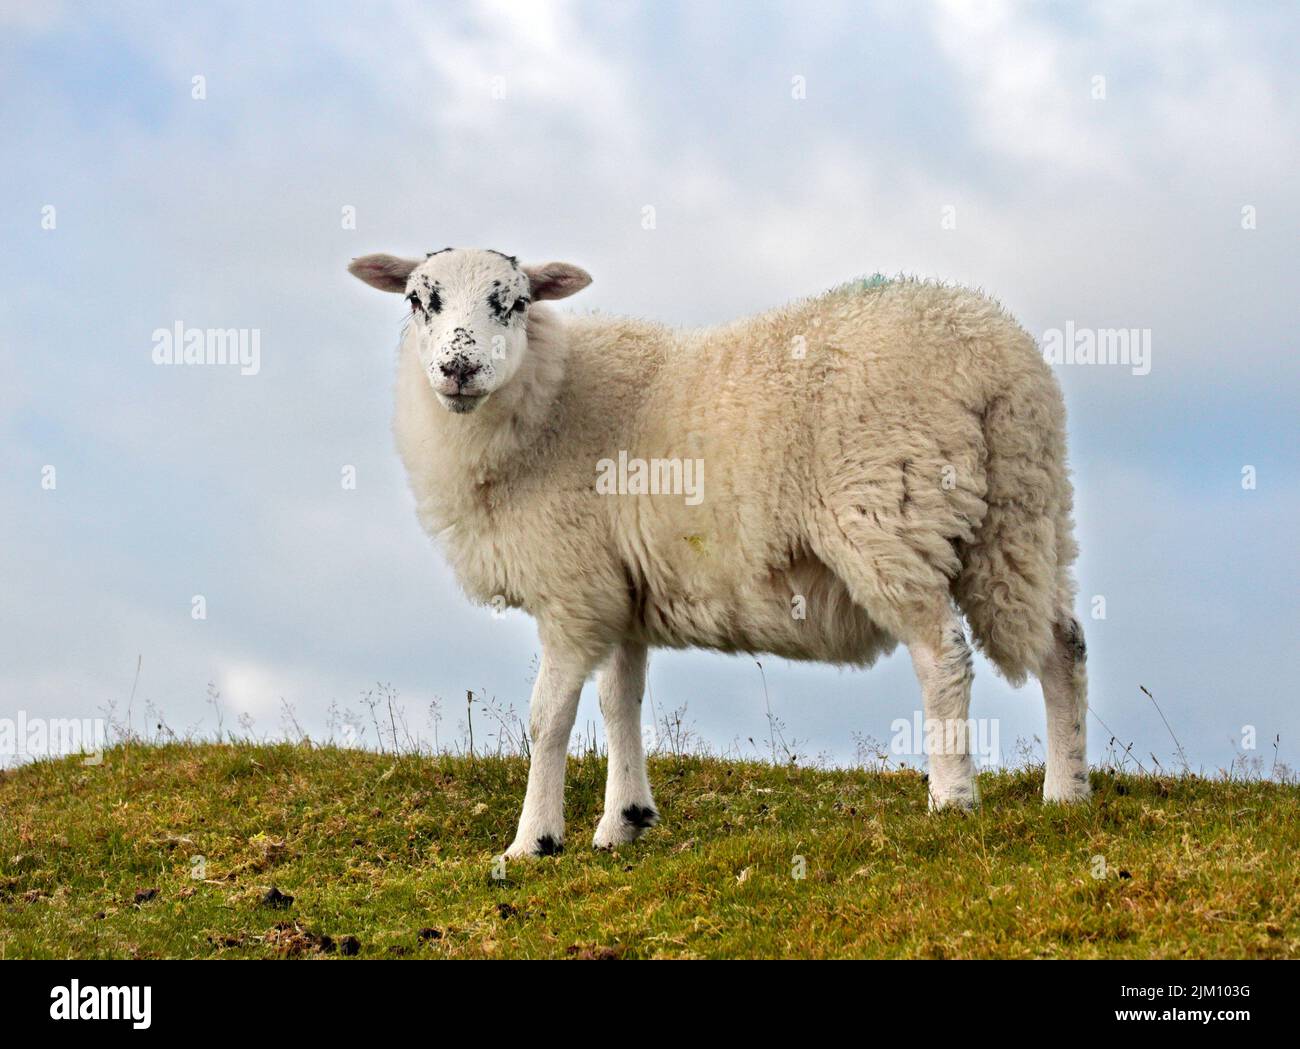 White Sheep, Minera Mountain, près de Wrexham, pays de Galles Banque D'Images